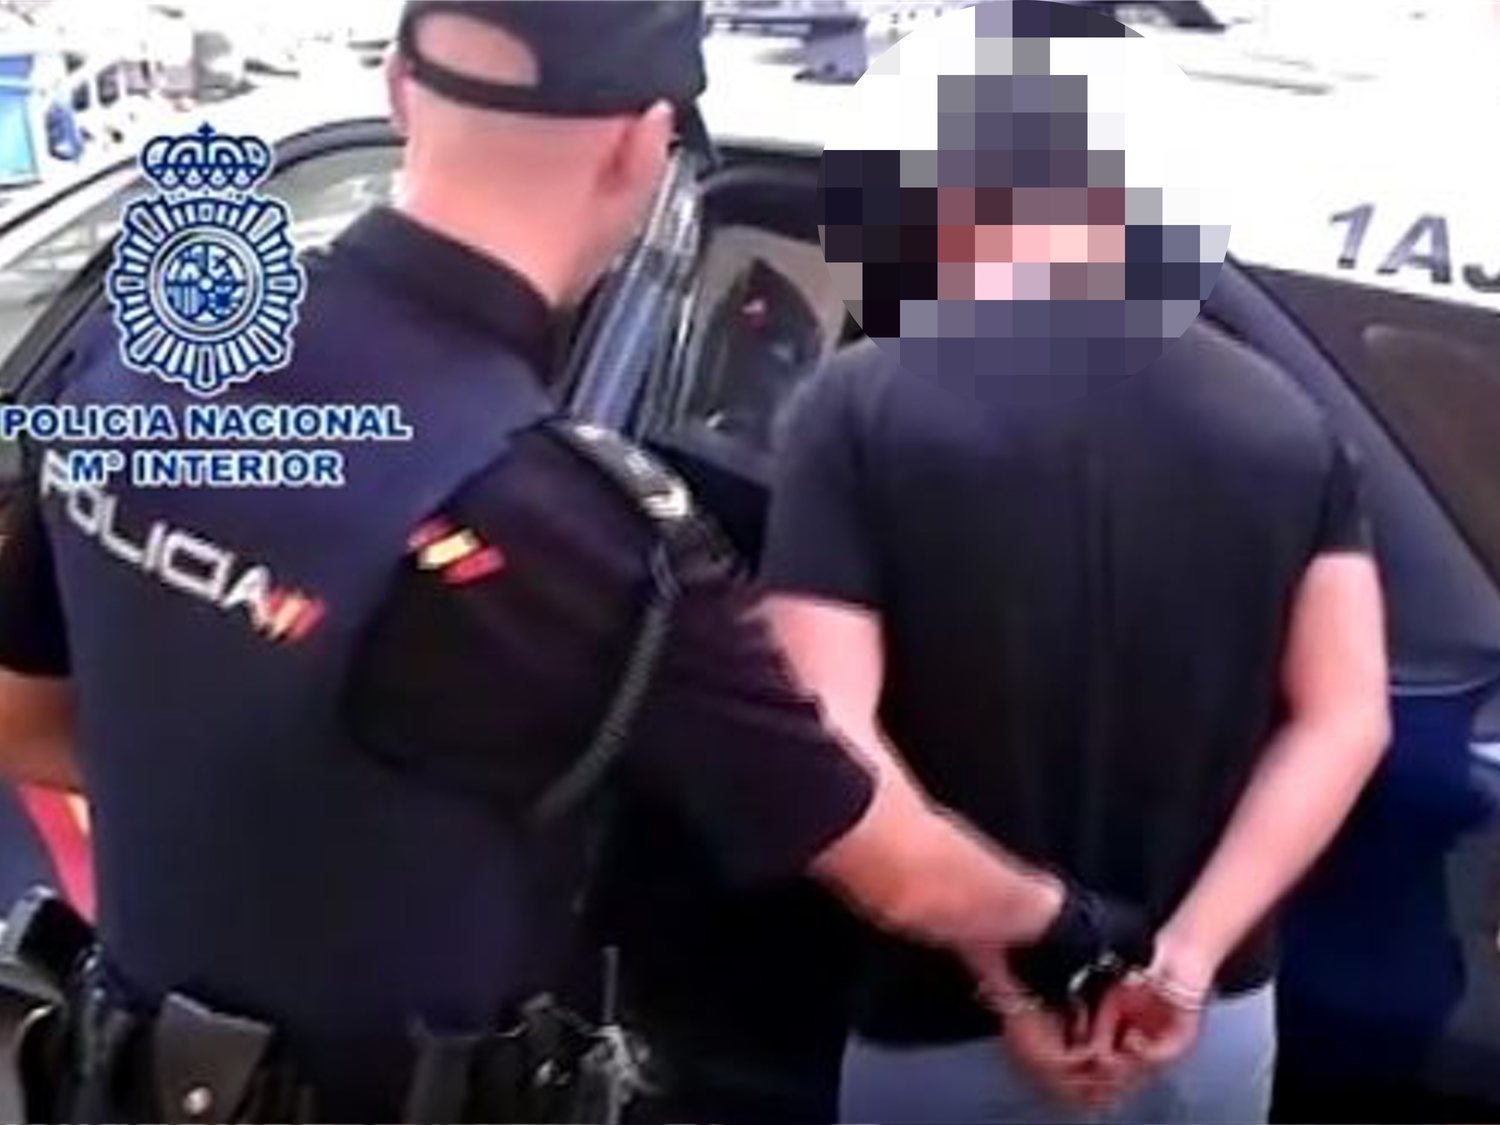 Sale de prisión un violador gallego "no arrepentido" que planea asentarse en Cantabria